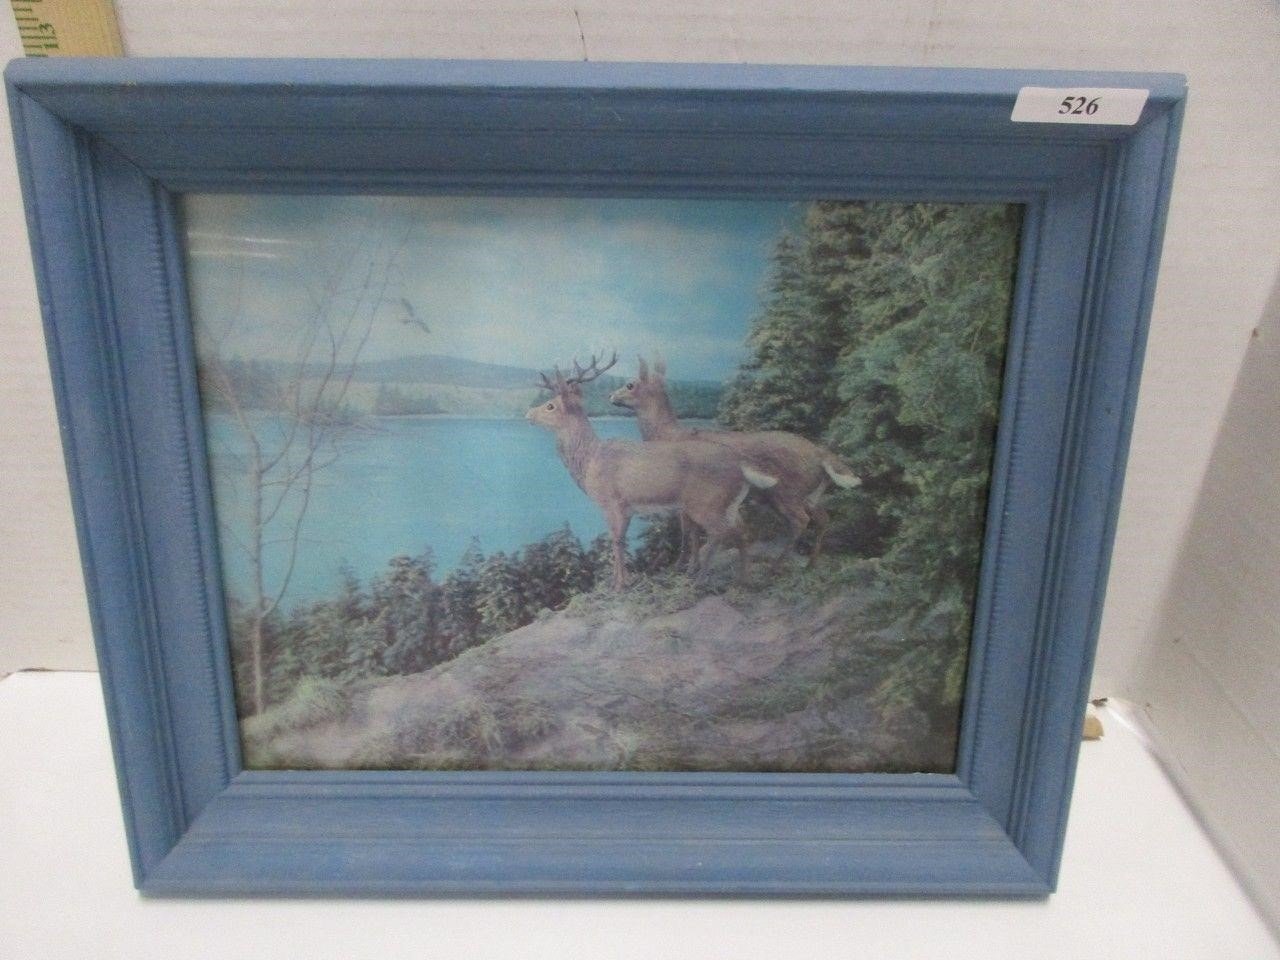 3-D deer picture